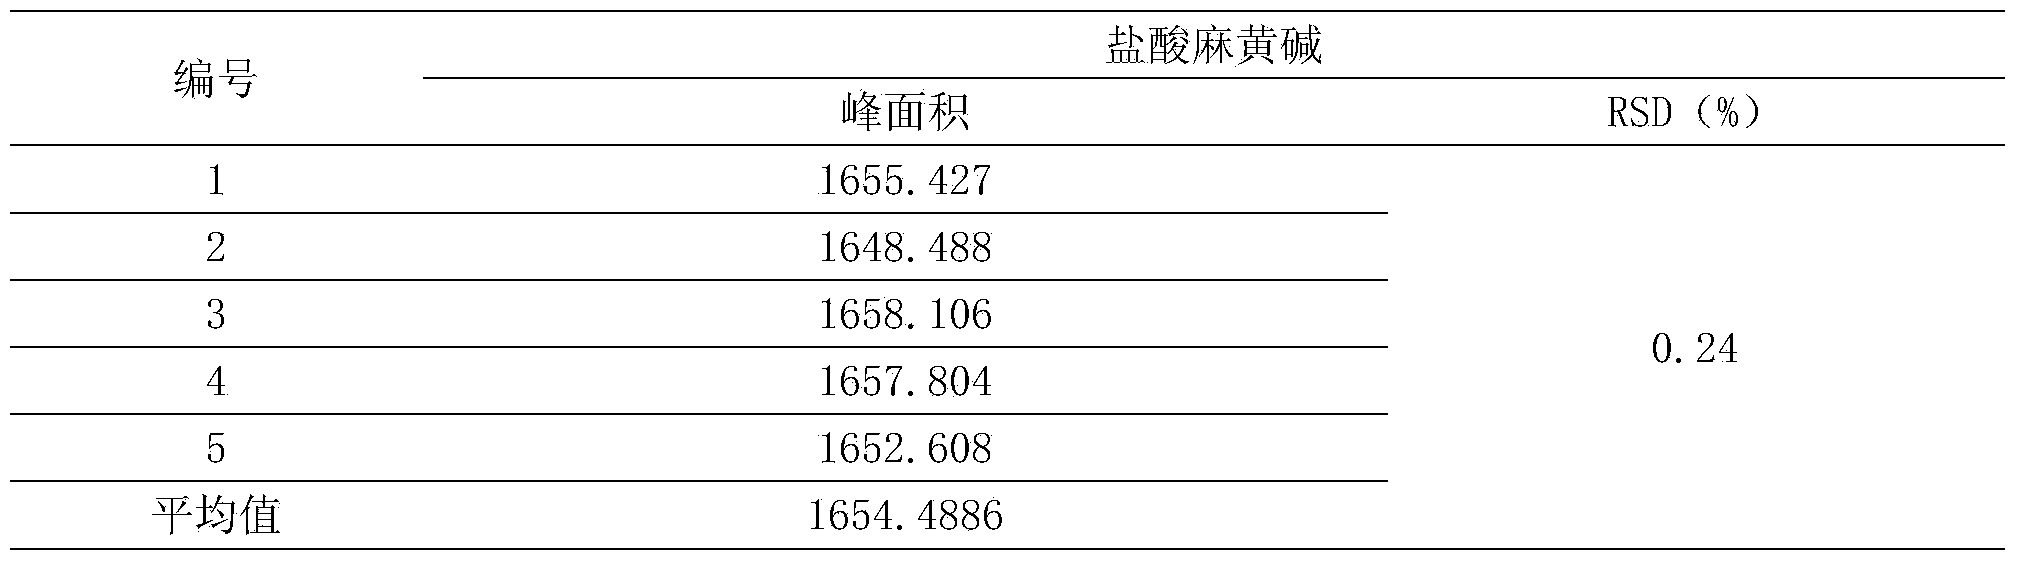 Method for detecting Jingfang granules